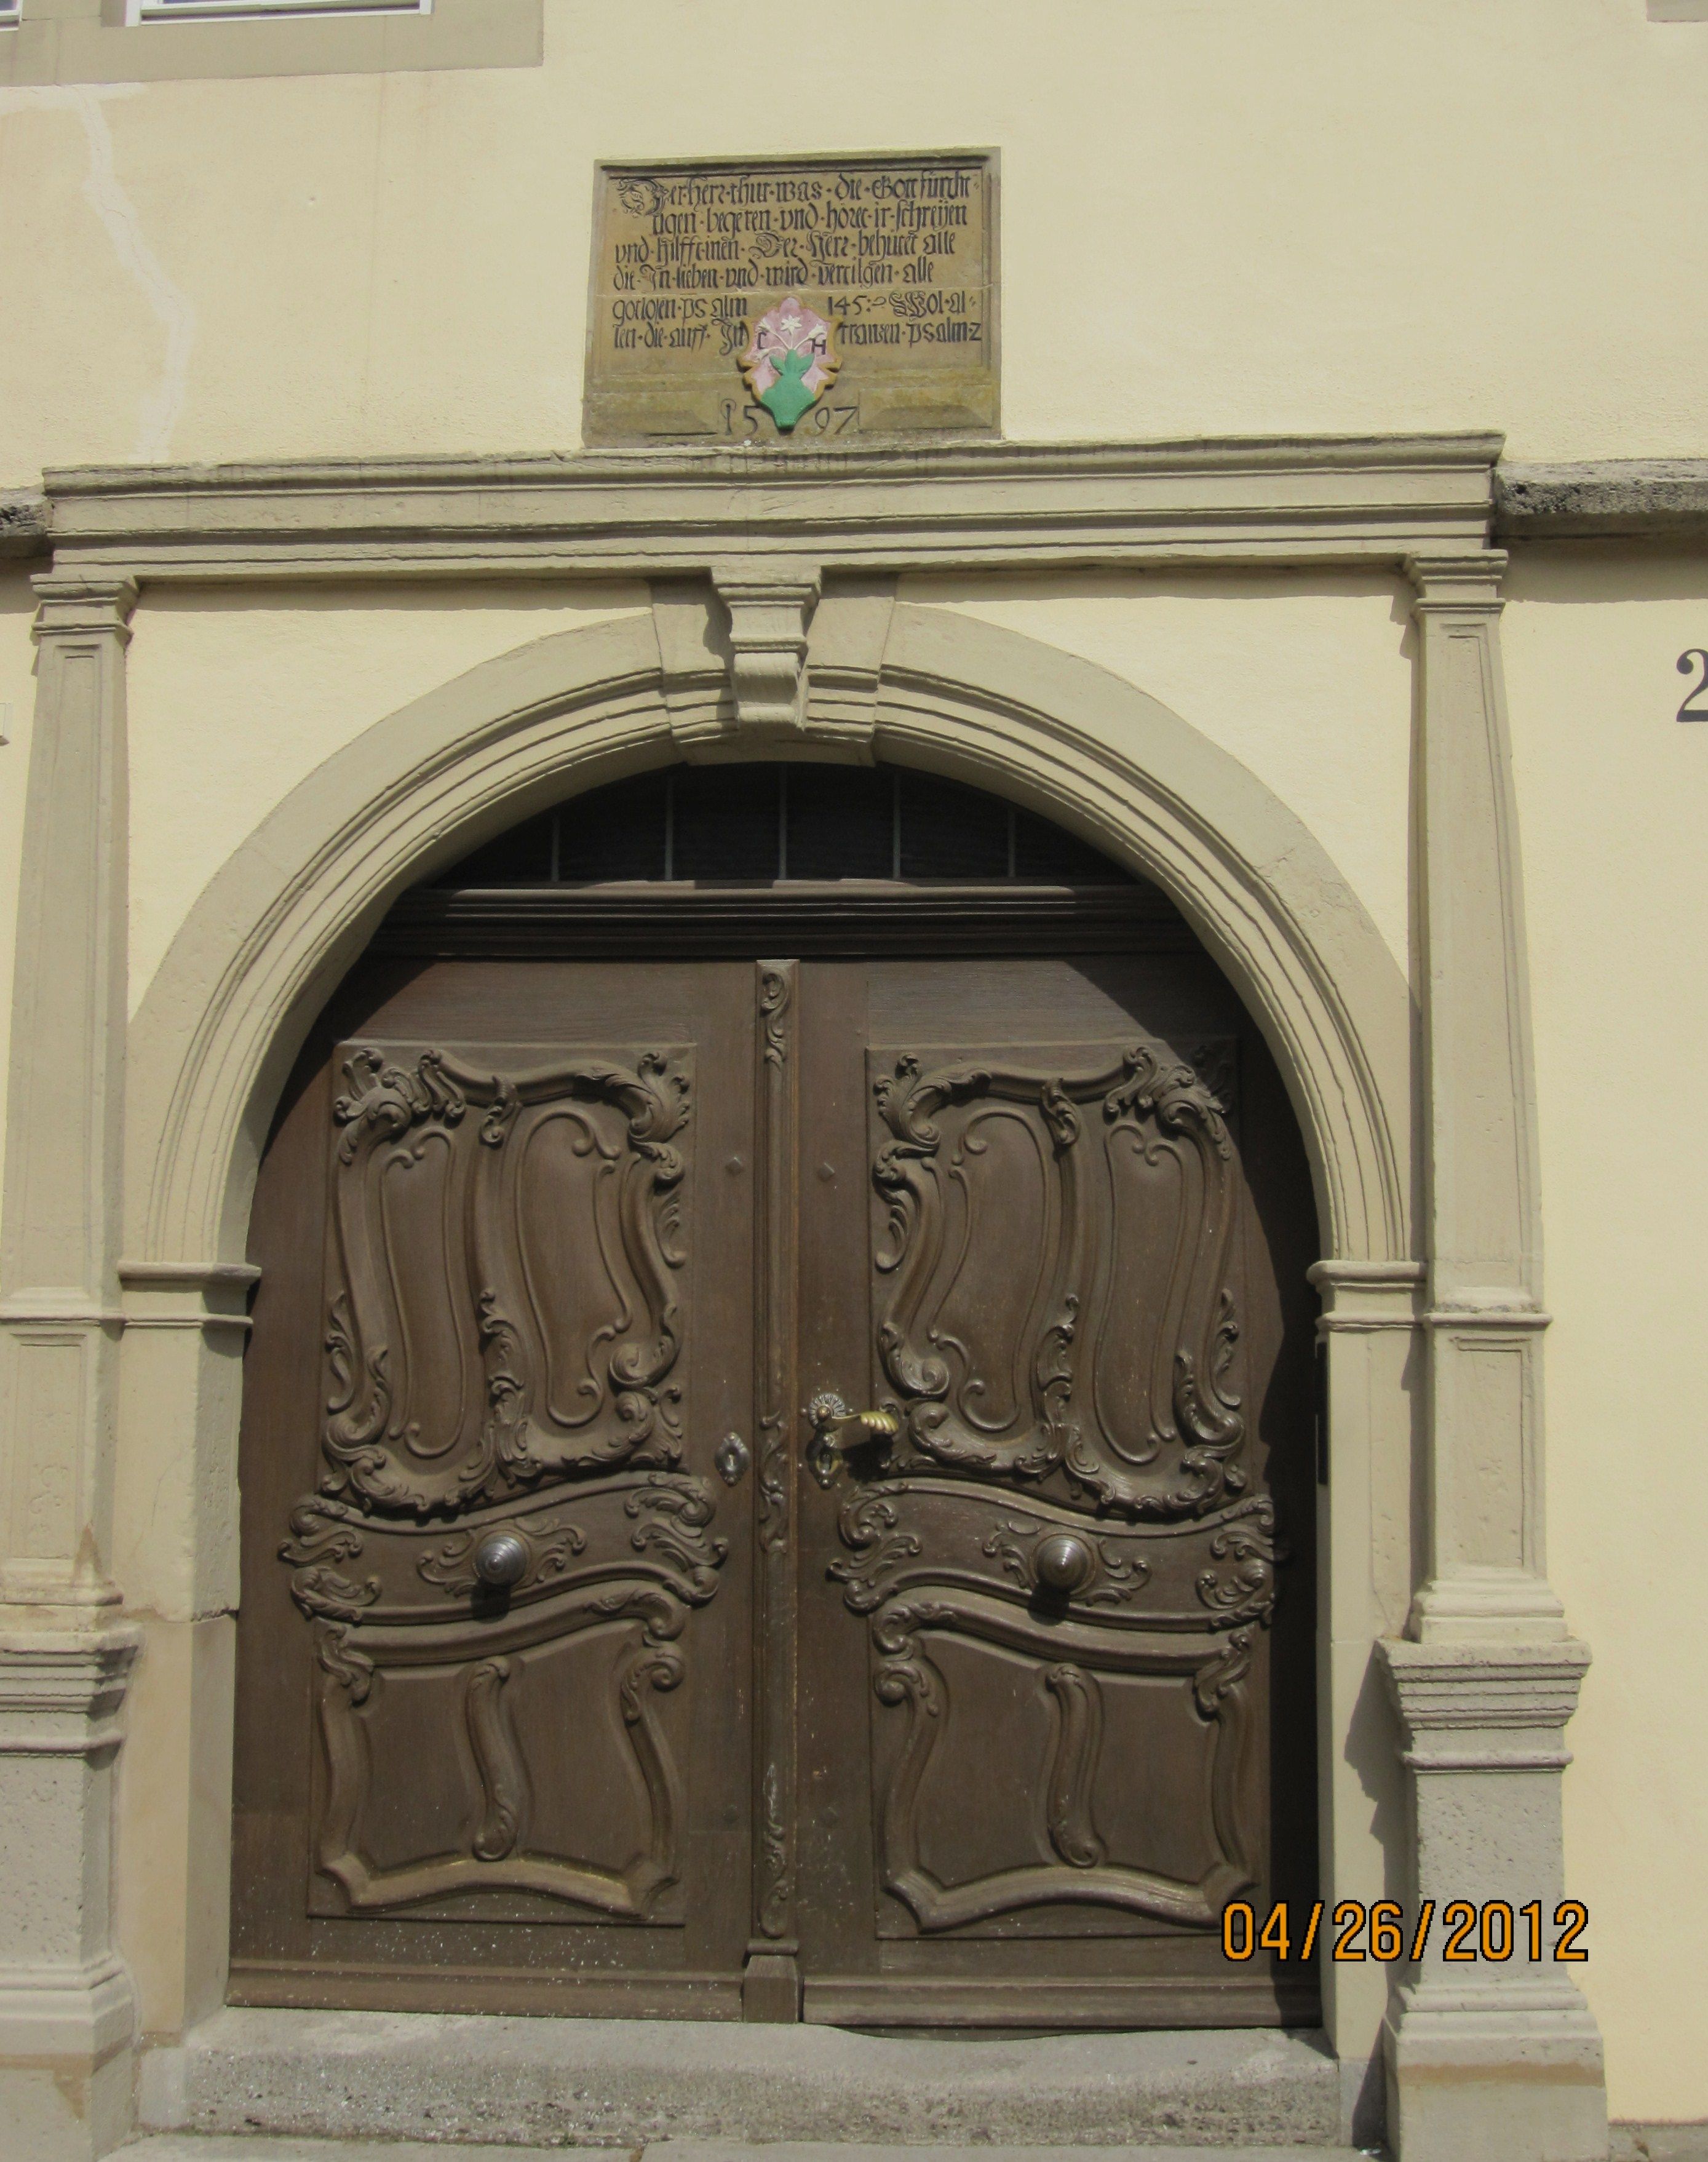 Carved Doors Rothenburg ob der Tauber Germany | Germany | Pinterest ...